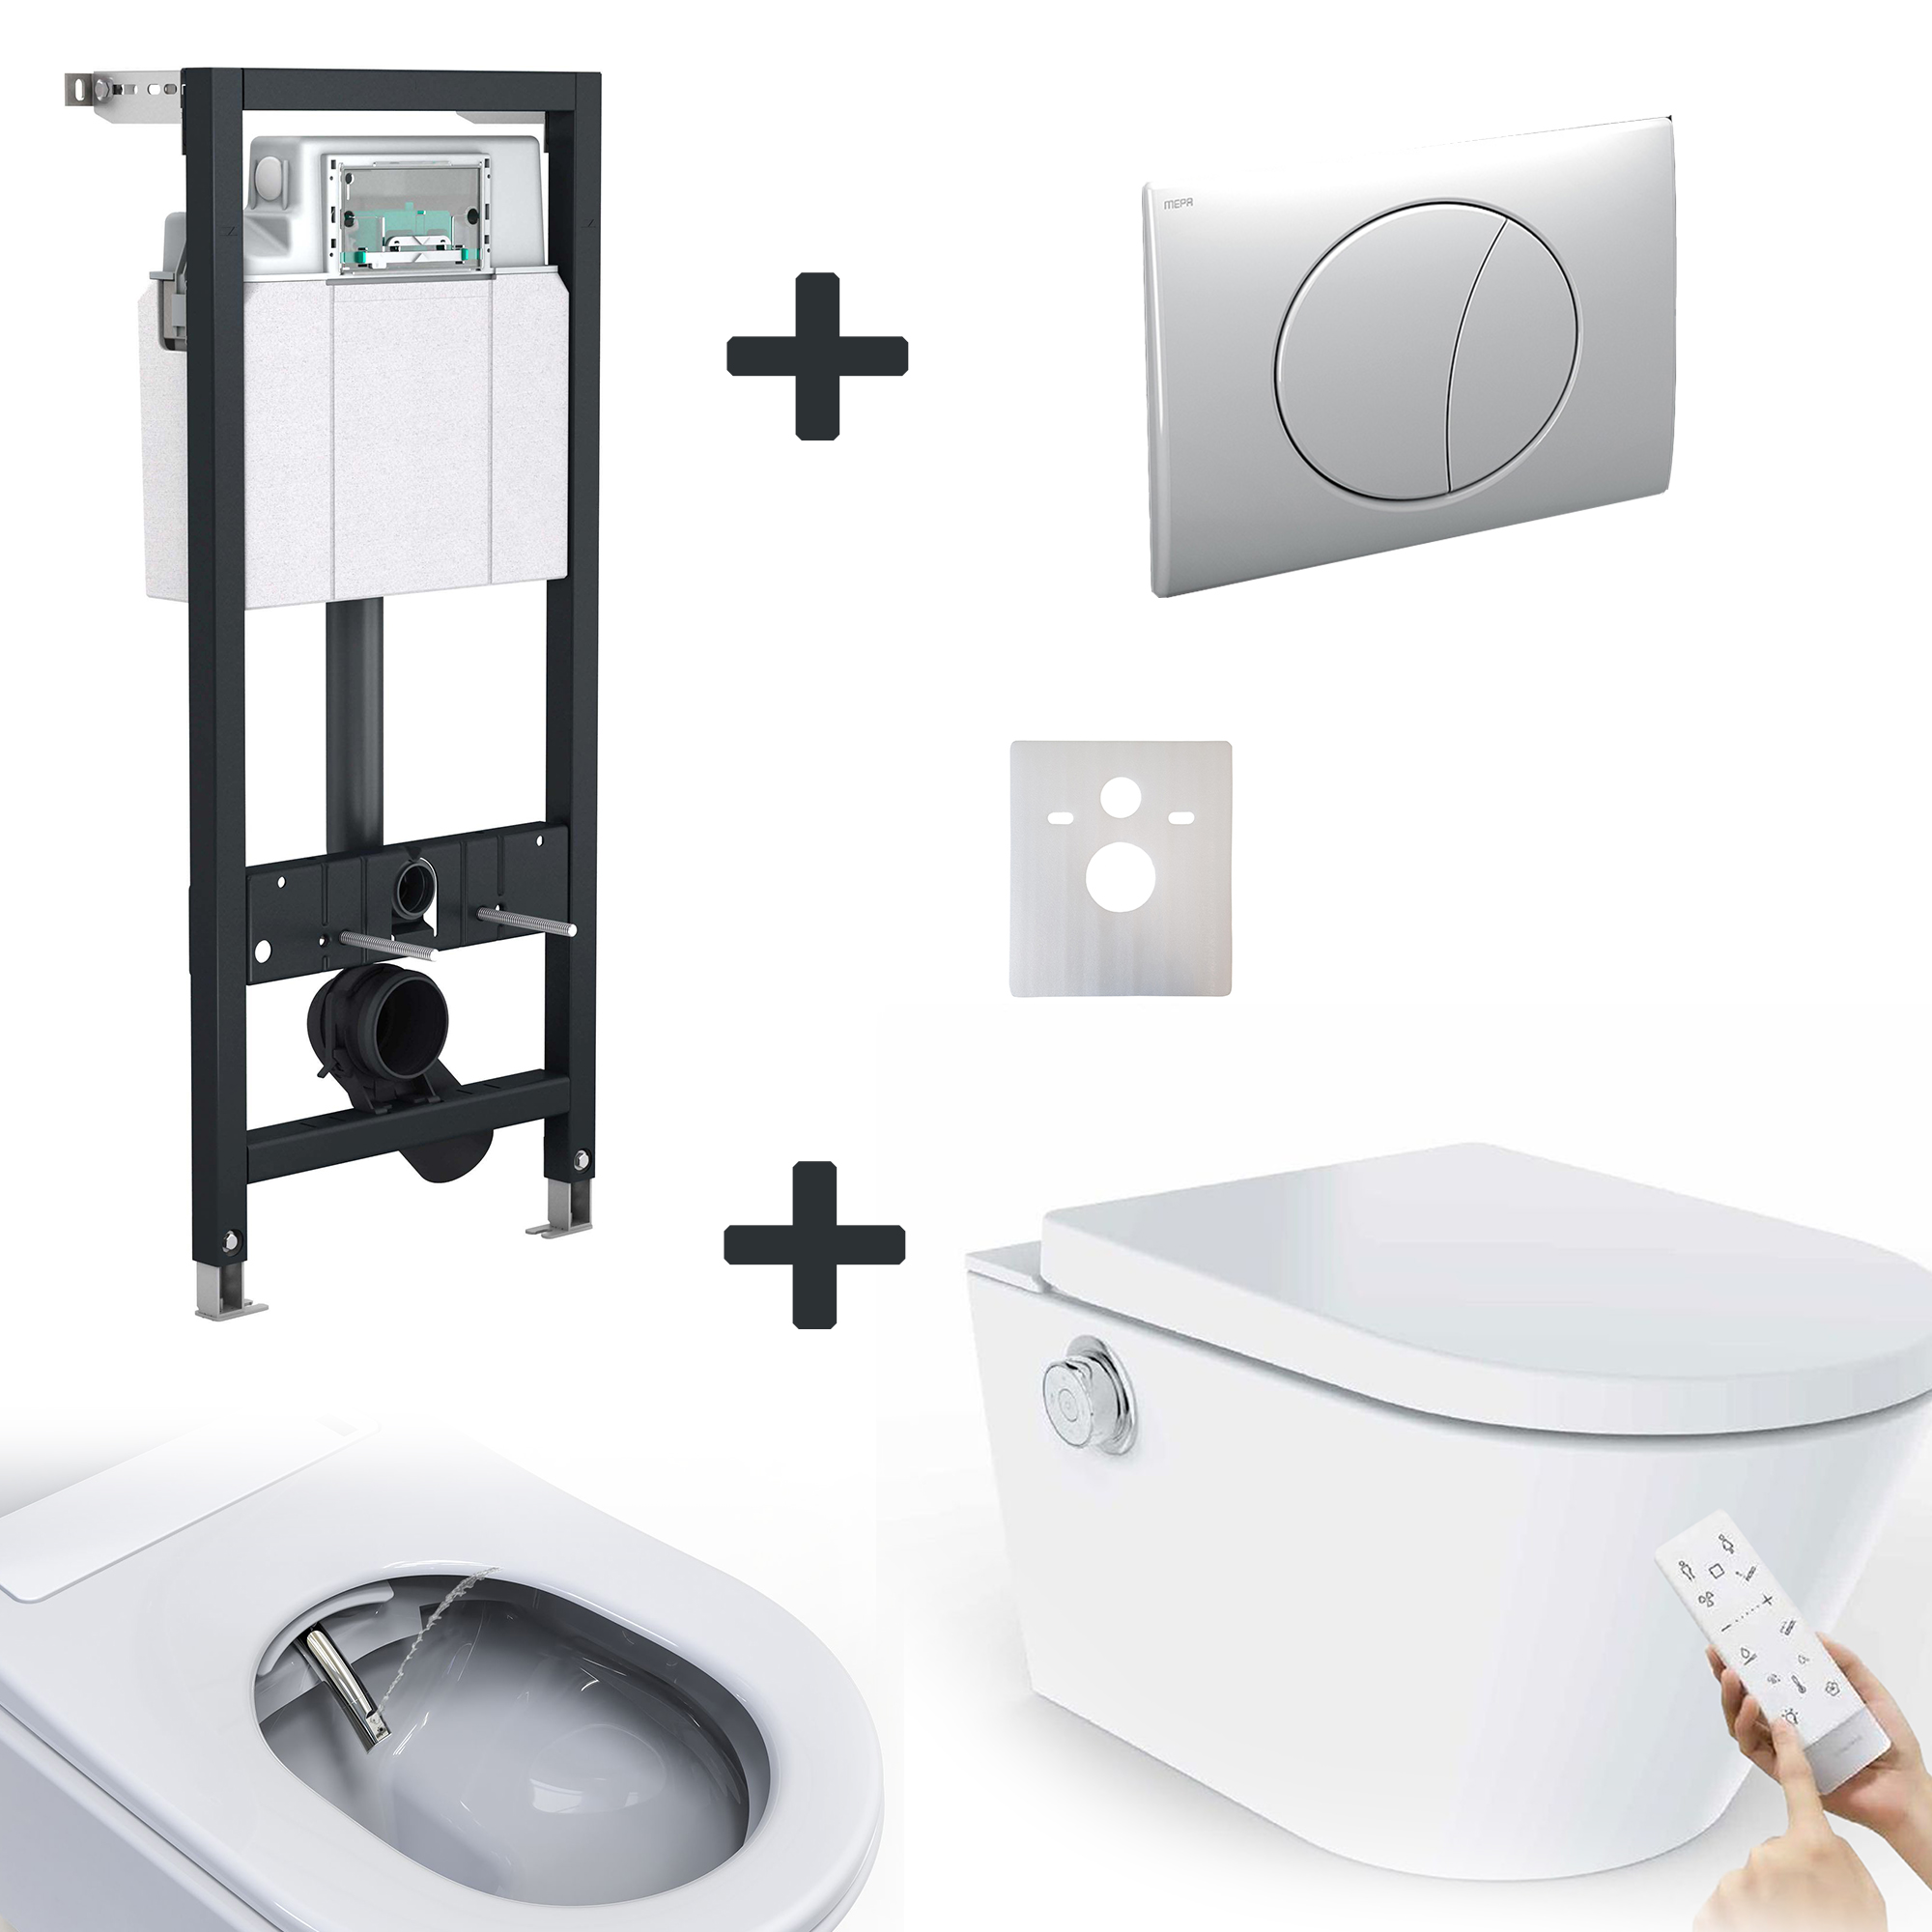 Spülrandloses Dusch-WC STATION-LUXO inkl. Spülkasten und Betätigungsplatte (set)